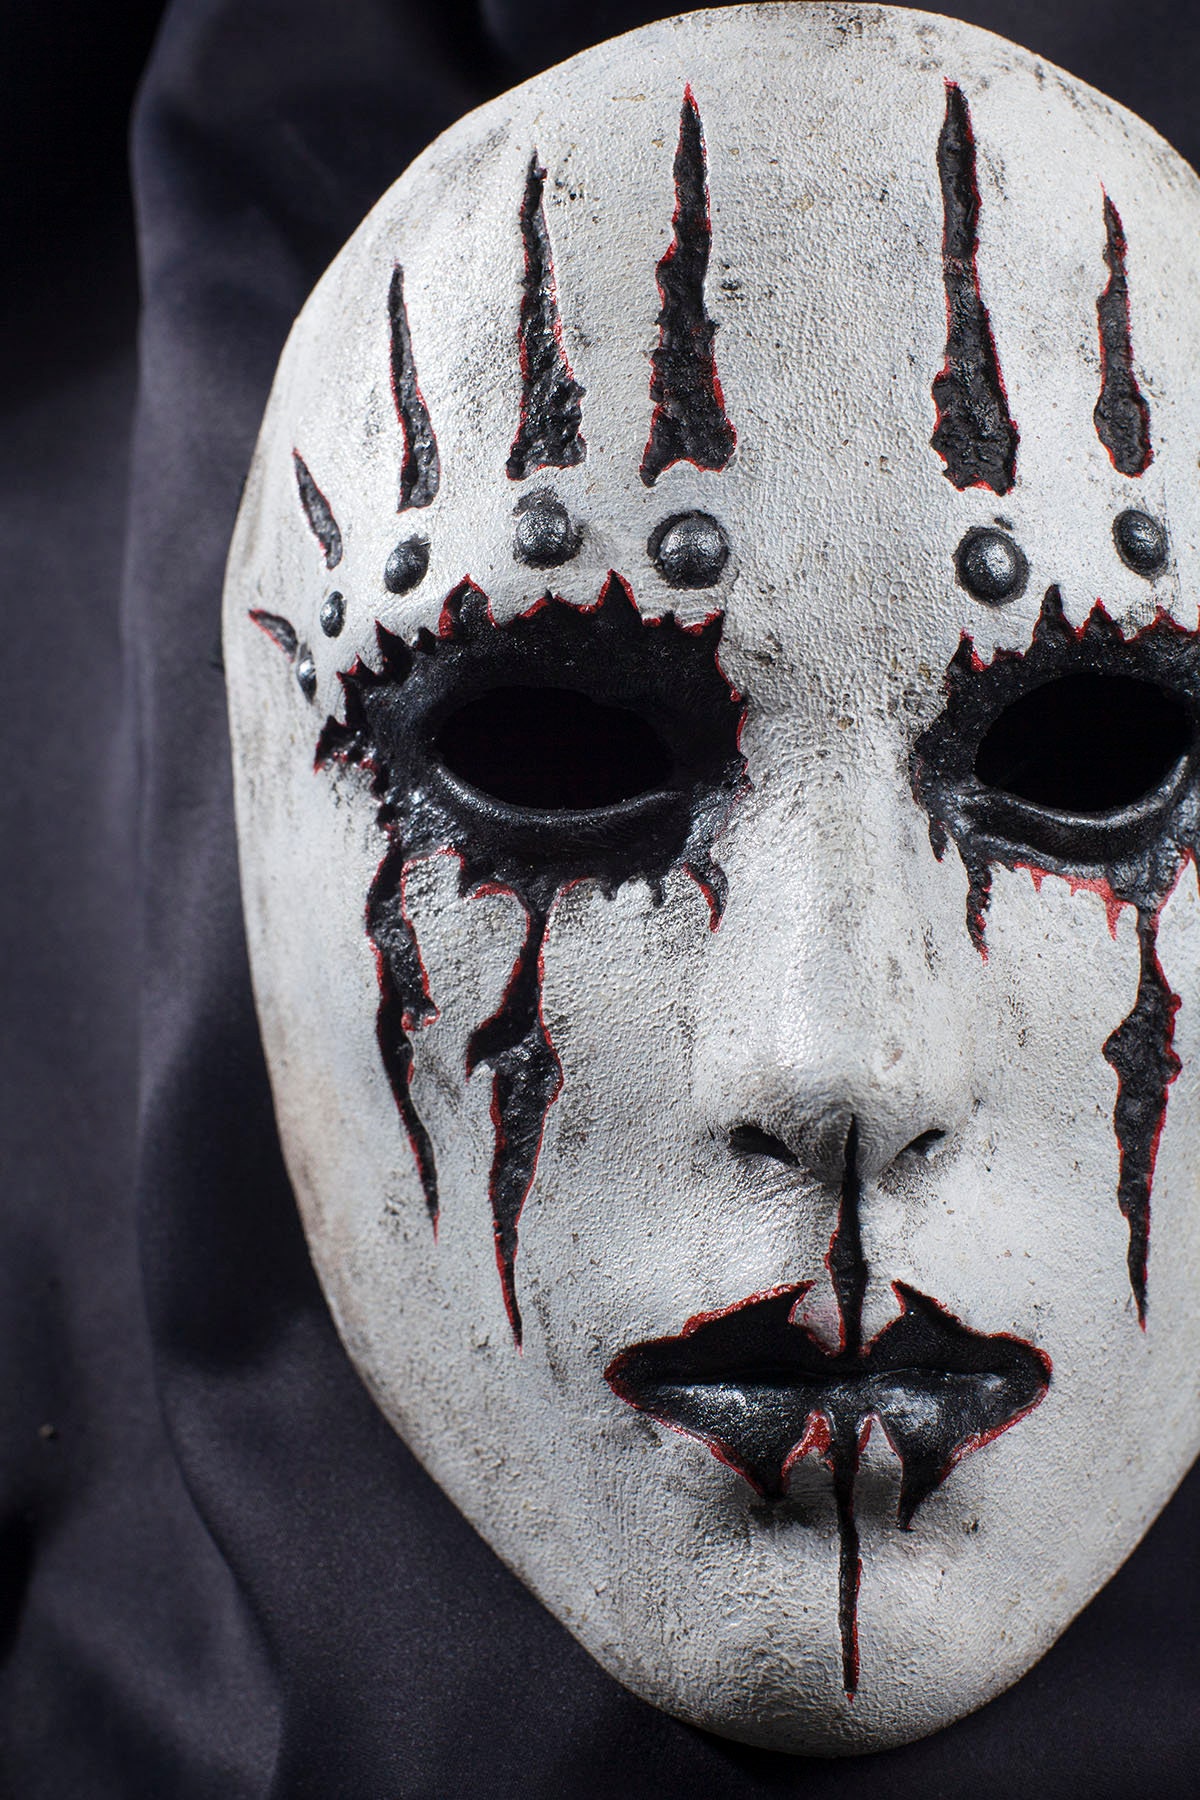 5 White Masks Joey Jordison For Halloween